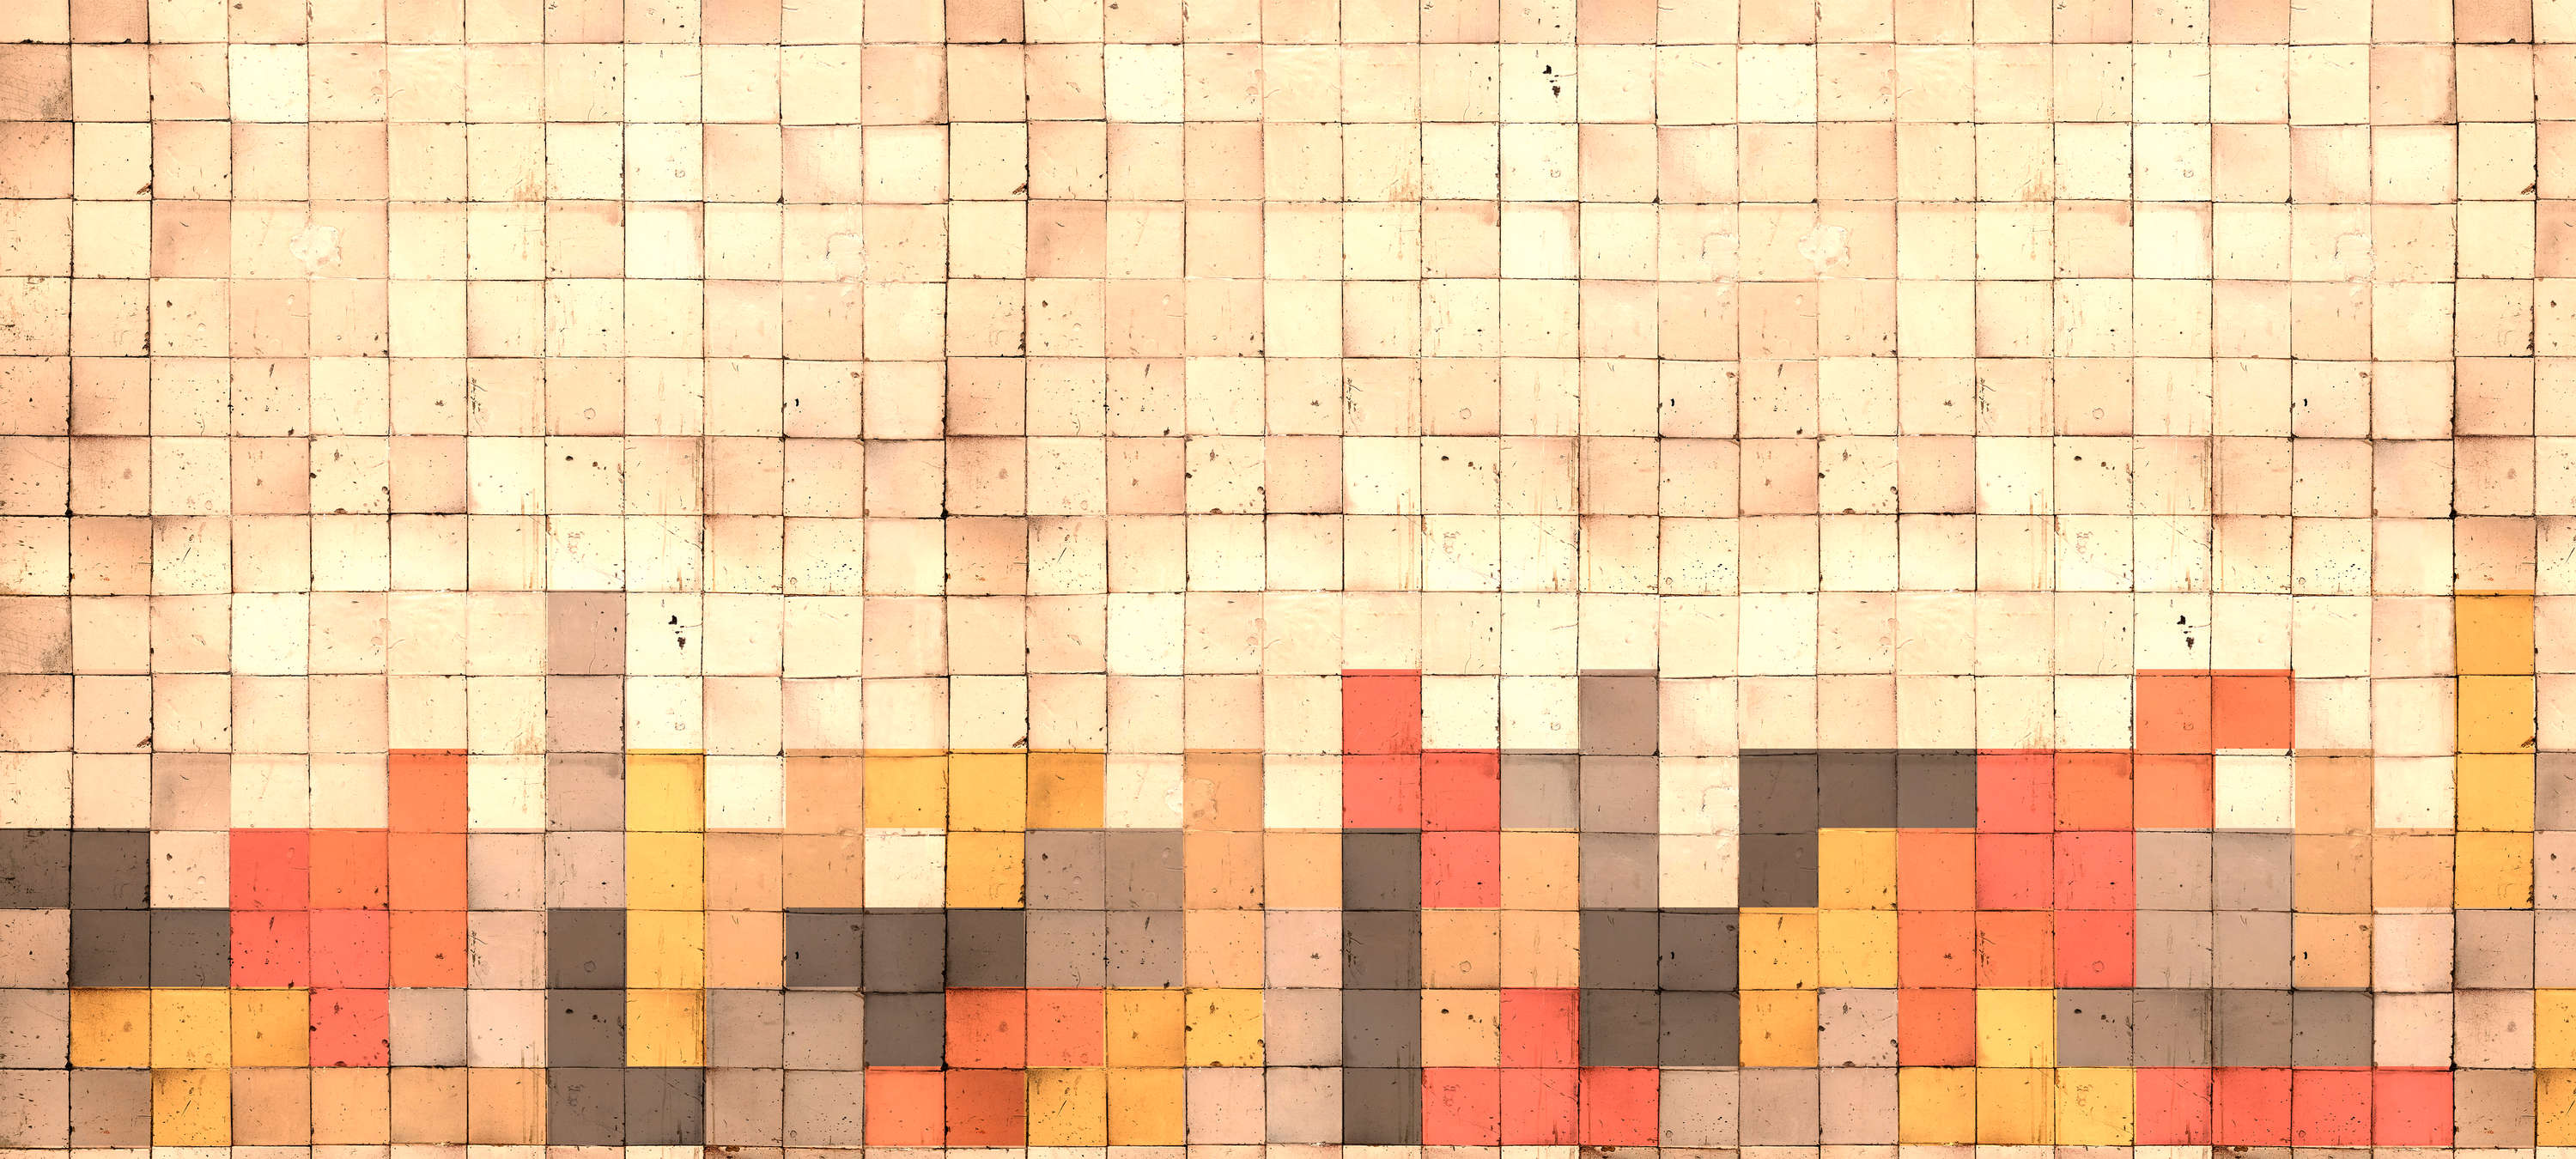             Fototapete Tetris-Stil, 3D Beton, Würfel Mosaik – Gelb, Orange, Rot
        